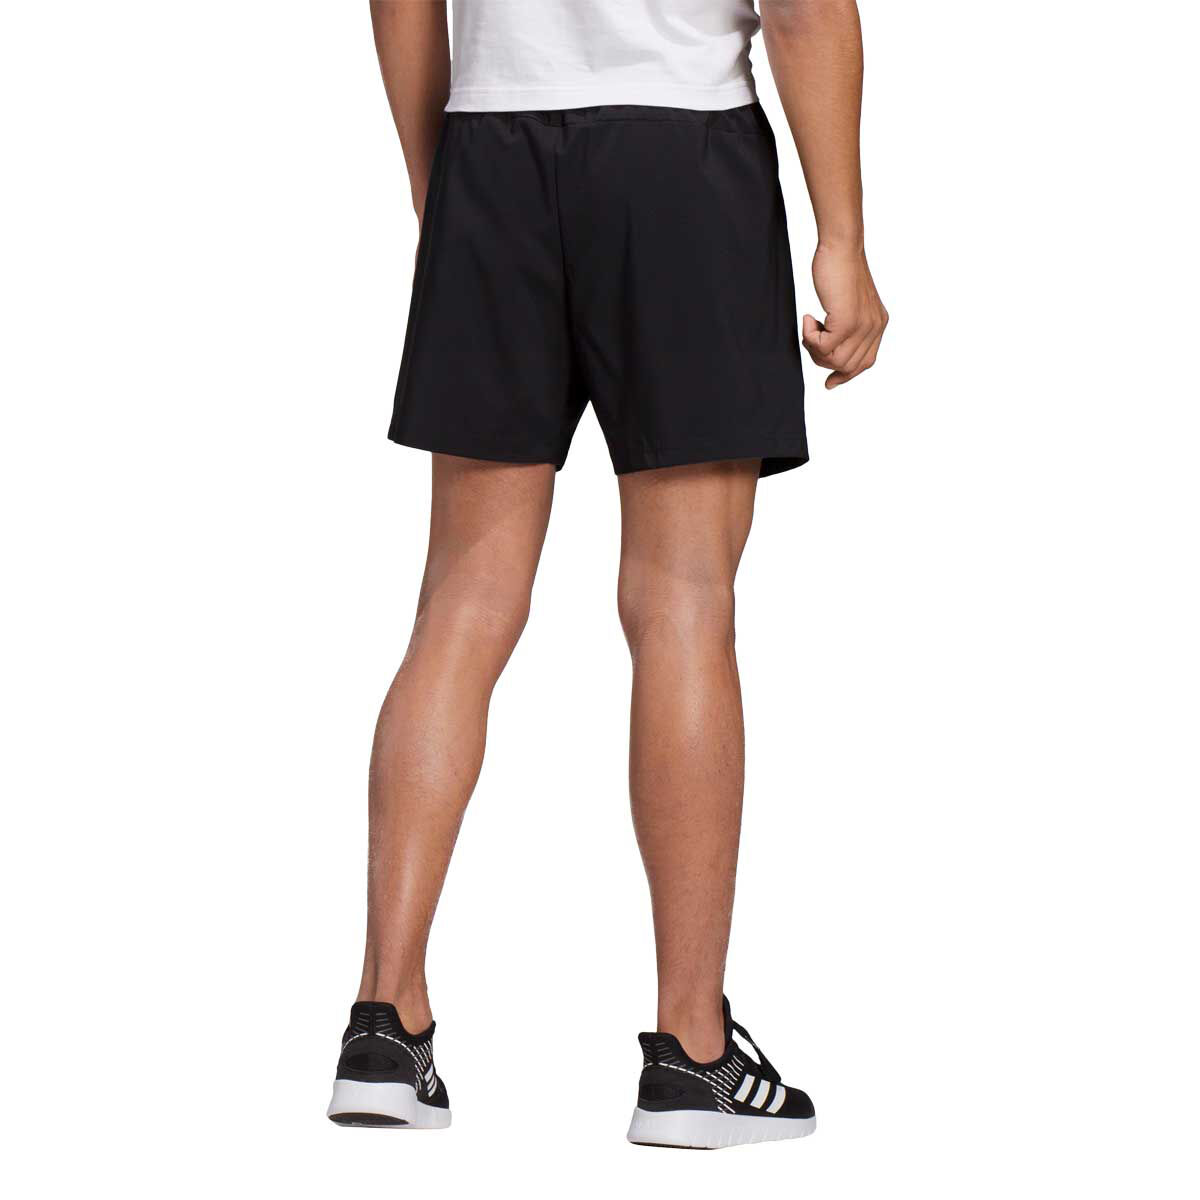 adidas men's essential shorts